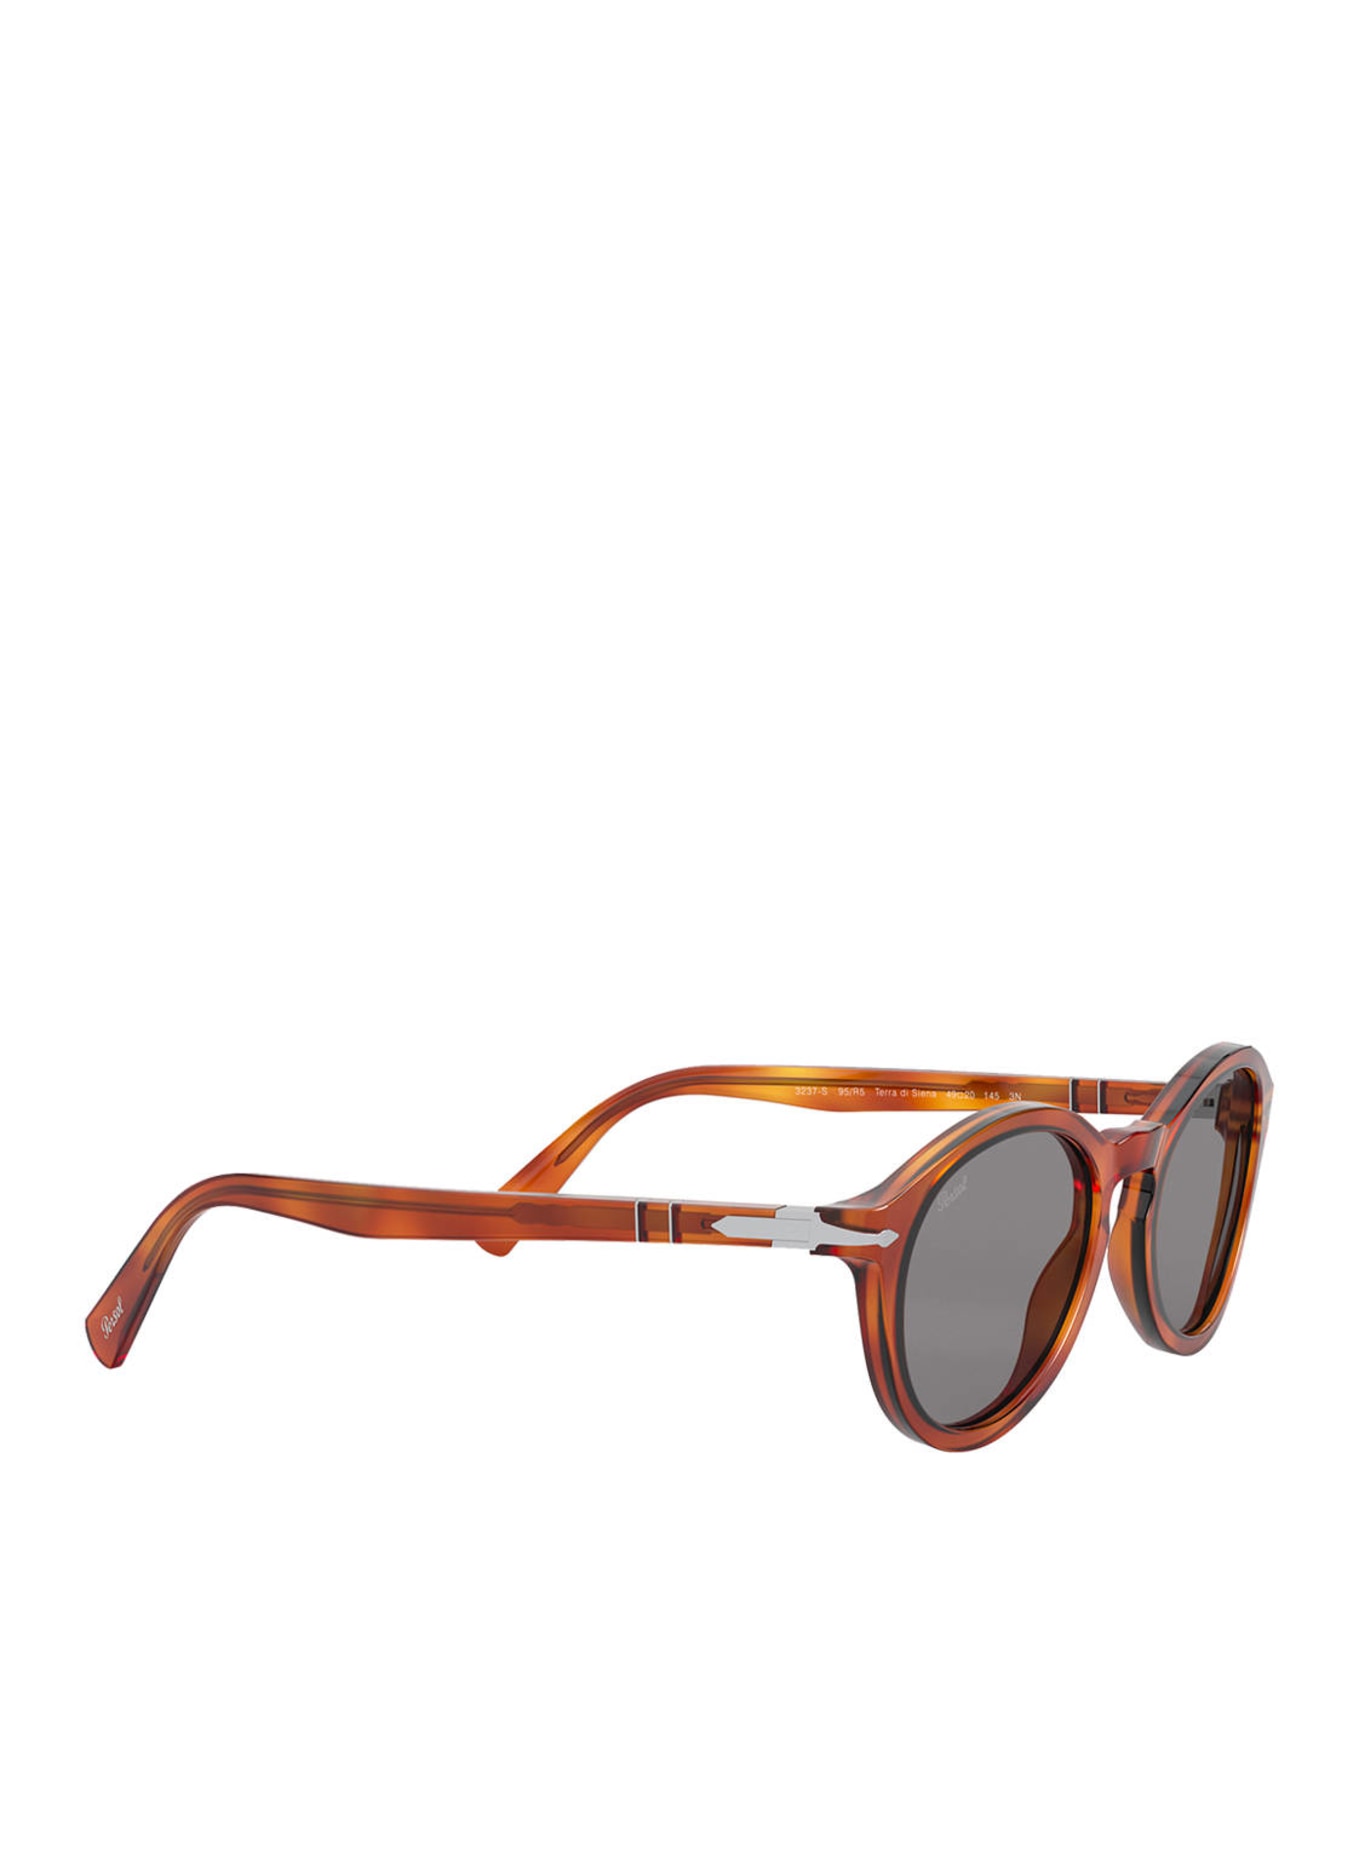 Persol Sunglasses PO3237S, Color: 96/R5 - BROWN/ GRAY (Image 3)